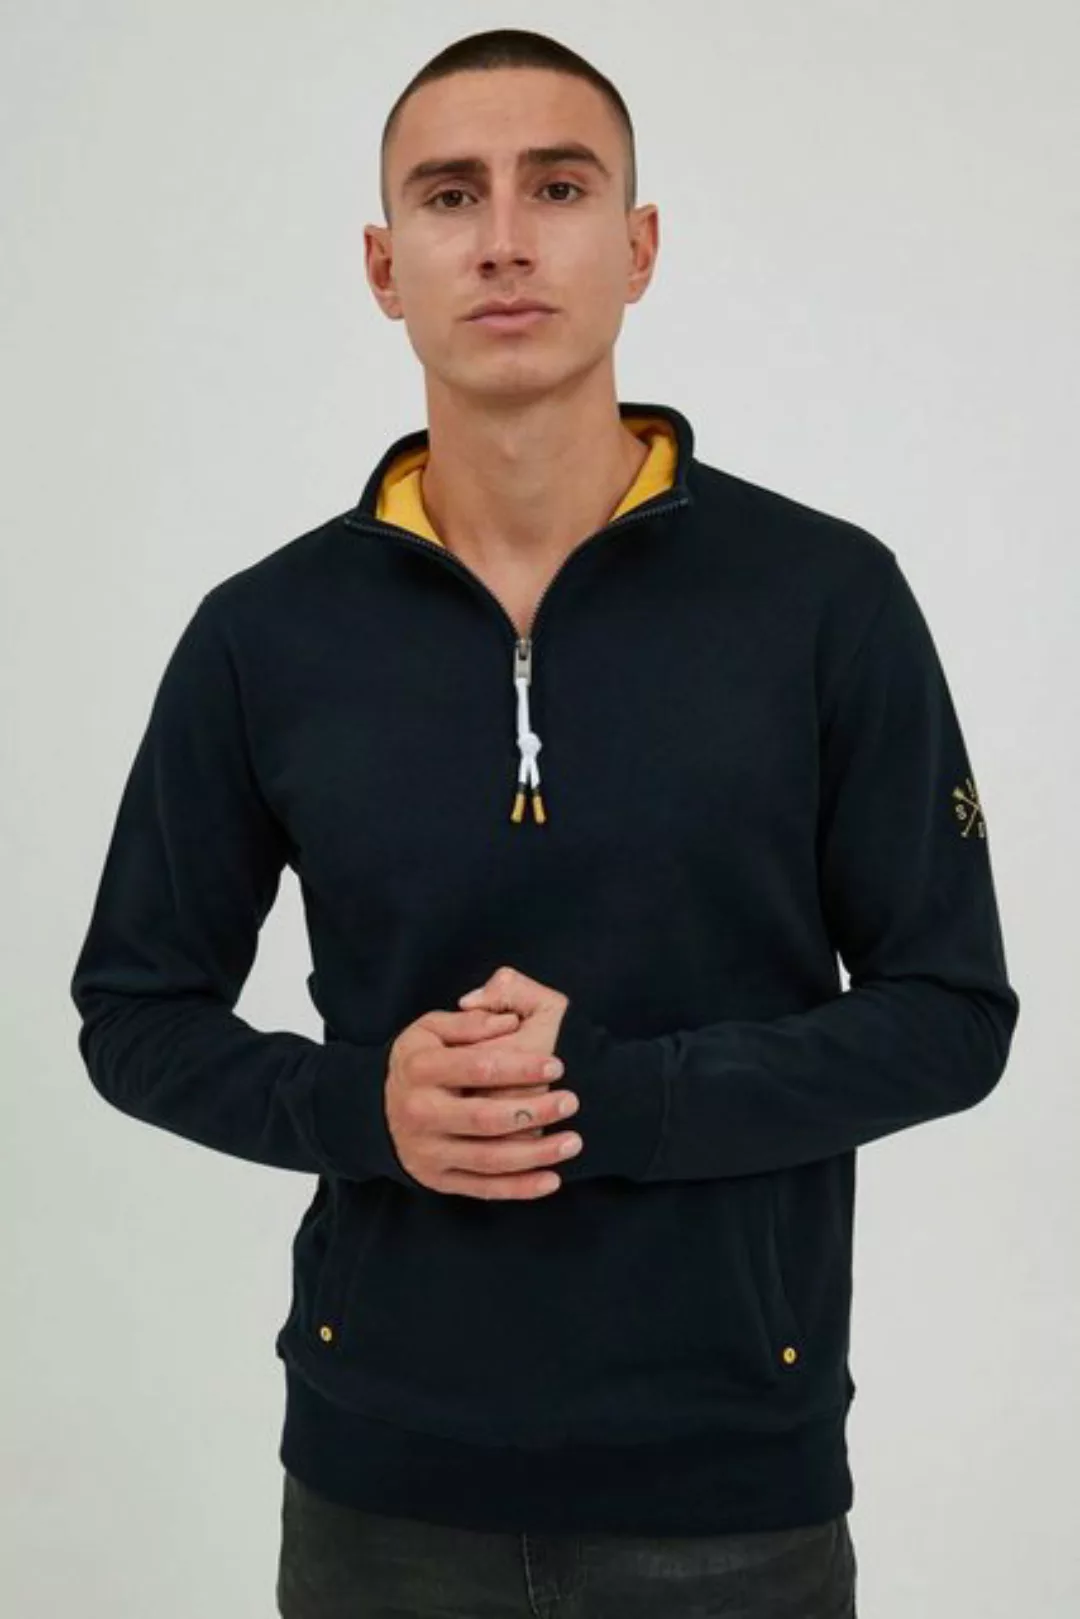 !Solid Sweatshirt SDKaran Moderner Sweater mit Troyer-Kragen günstig online kaufen